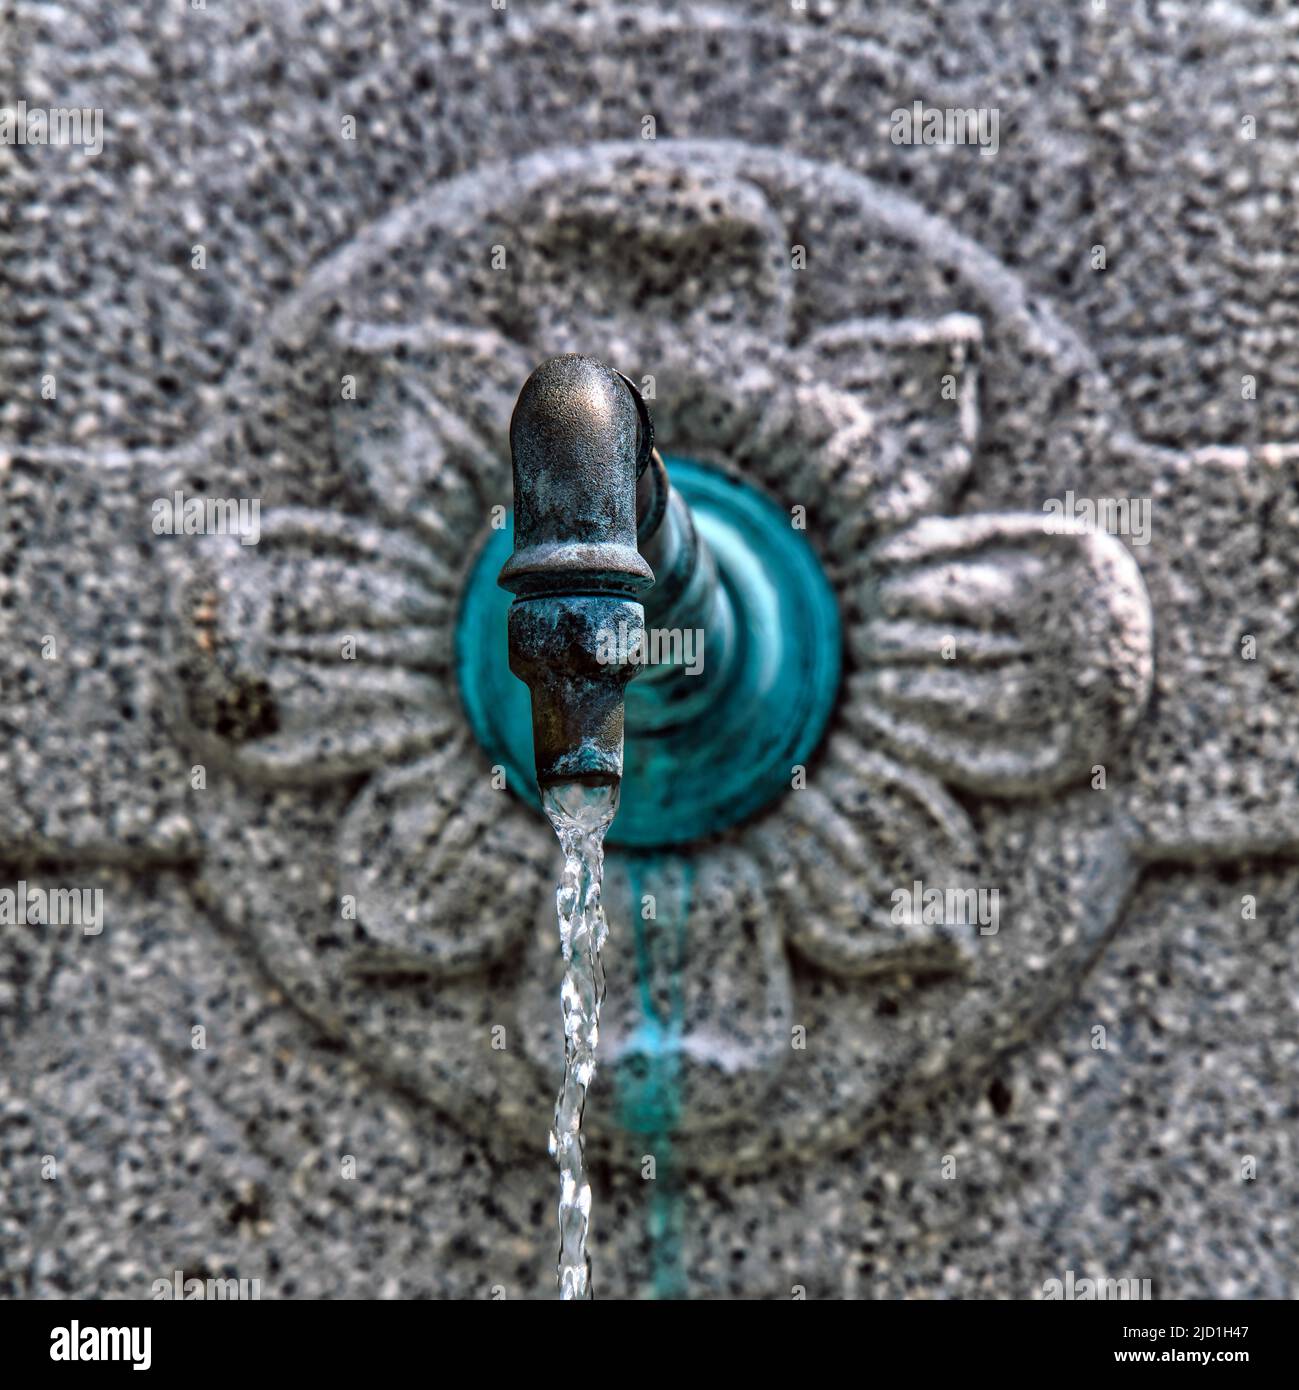 Close-up, turquoise water tap, fountain, rippling water, Rueti, Switzerland Stock Photo